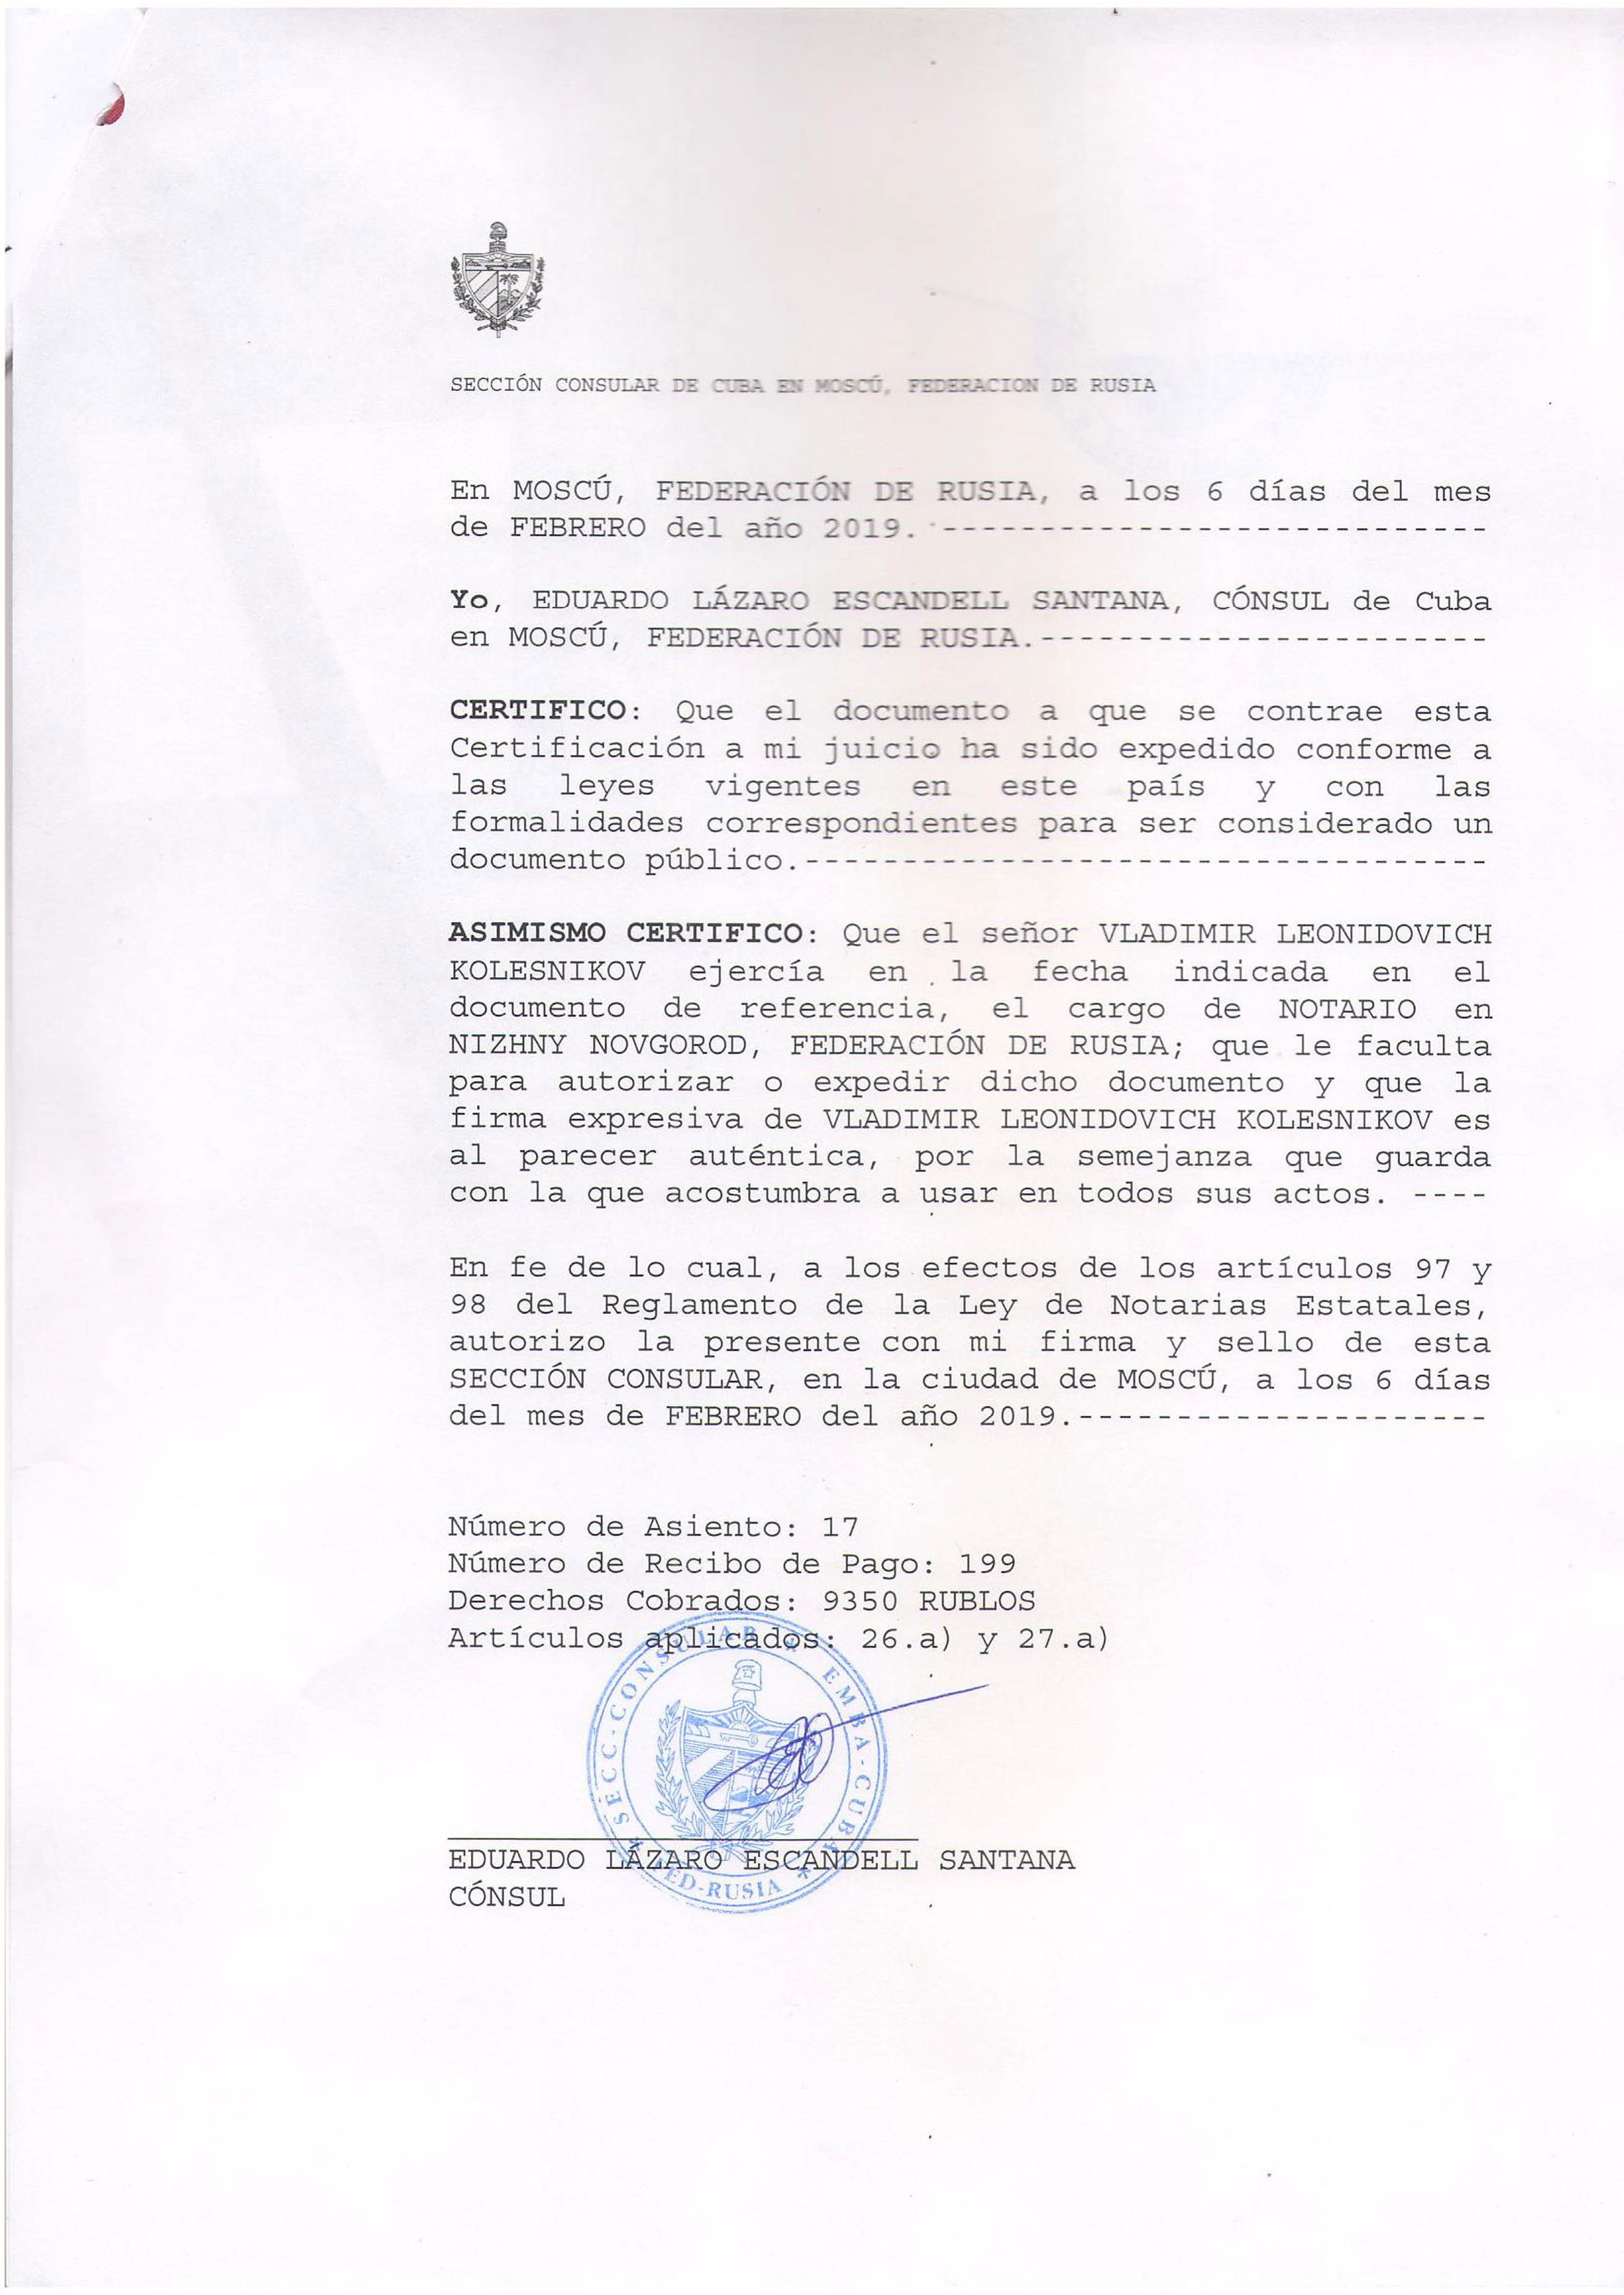 Esempio di legalizzazione di un documento commerciale per Cuba